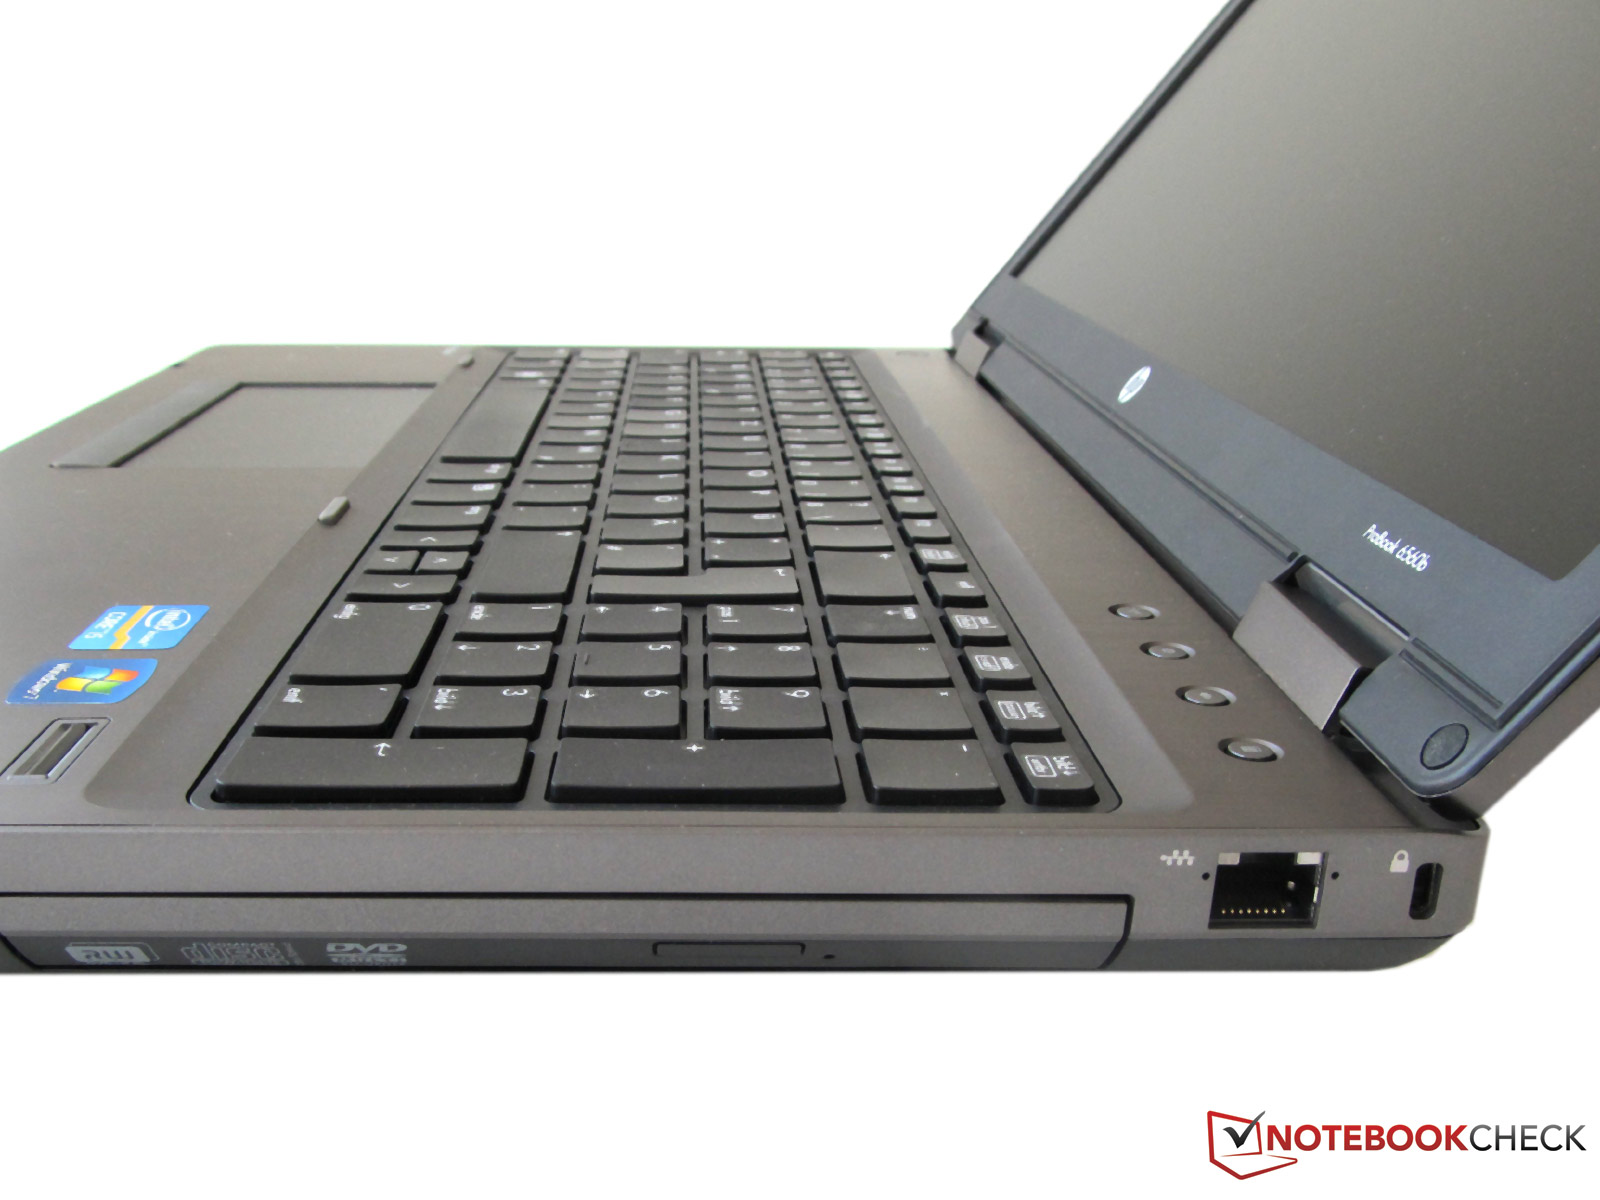 Review HP ProBook 6560b Notebook - NotebookCheck.net Reviews